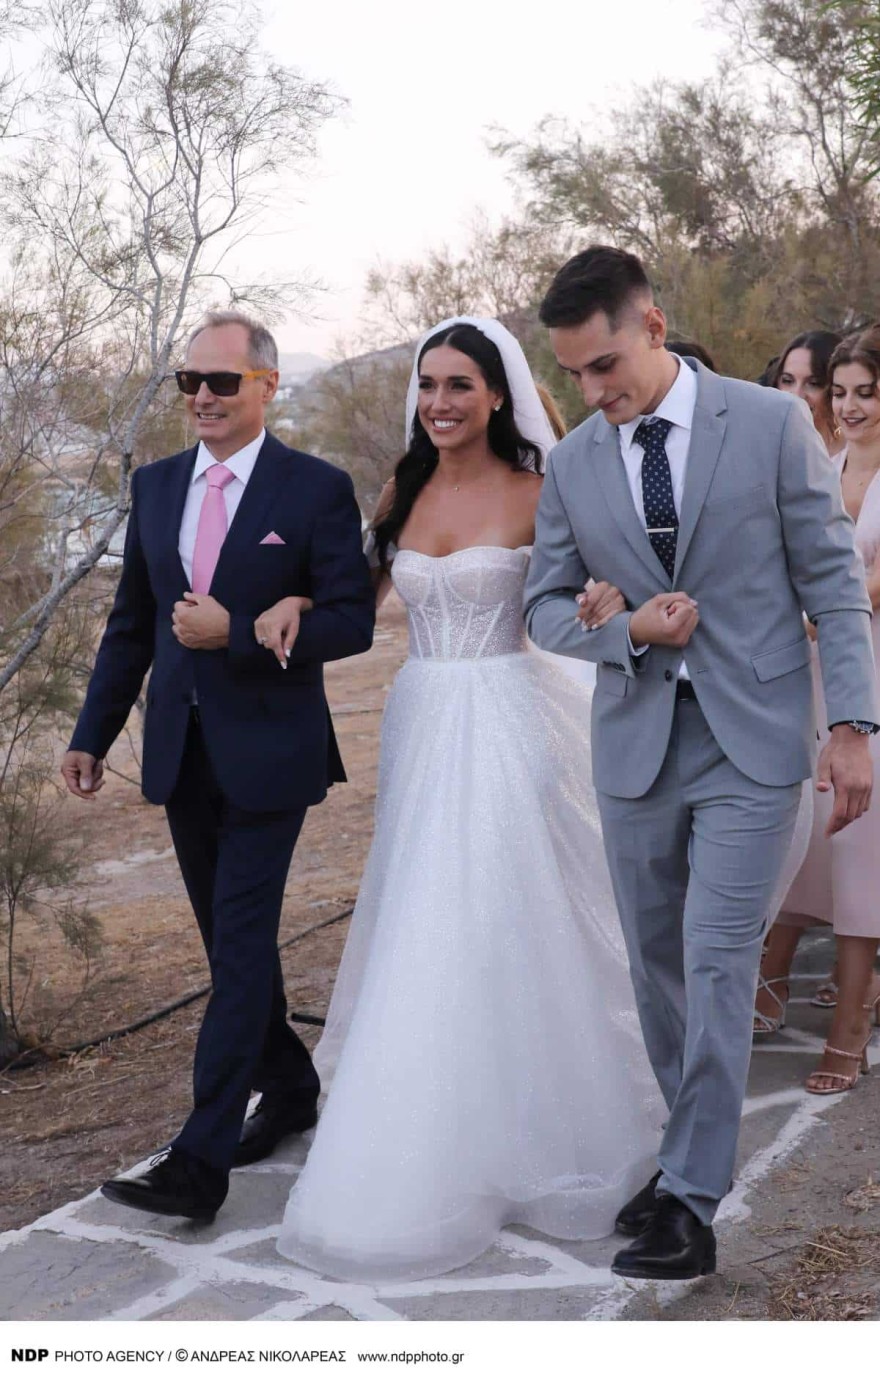 Βέρα Σωτηροπούλου: Σε ποια εταιρεία ανήκει το νυφικό που φόρεσε στον γάμο της με τον Stan